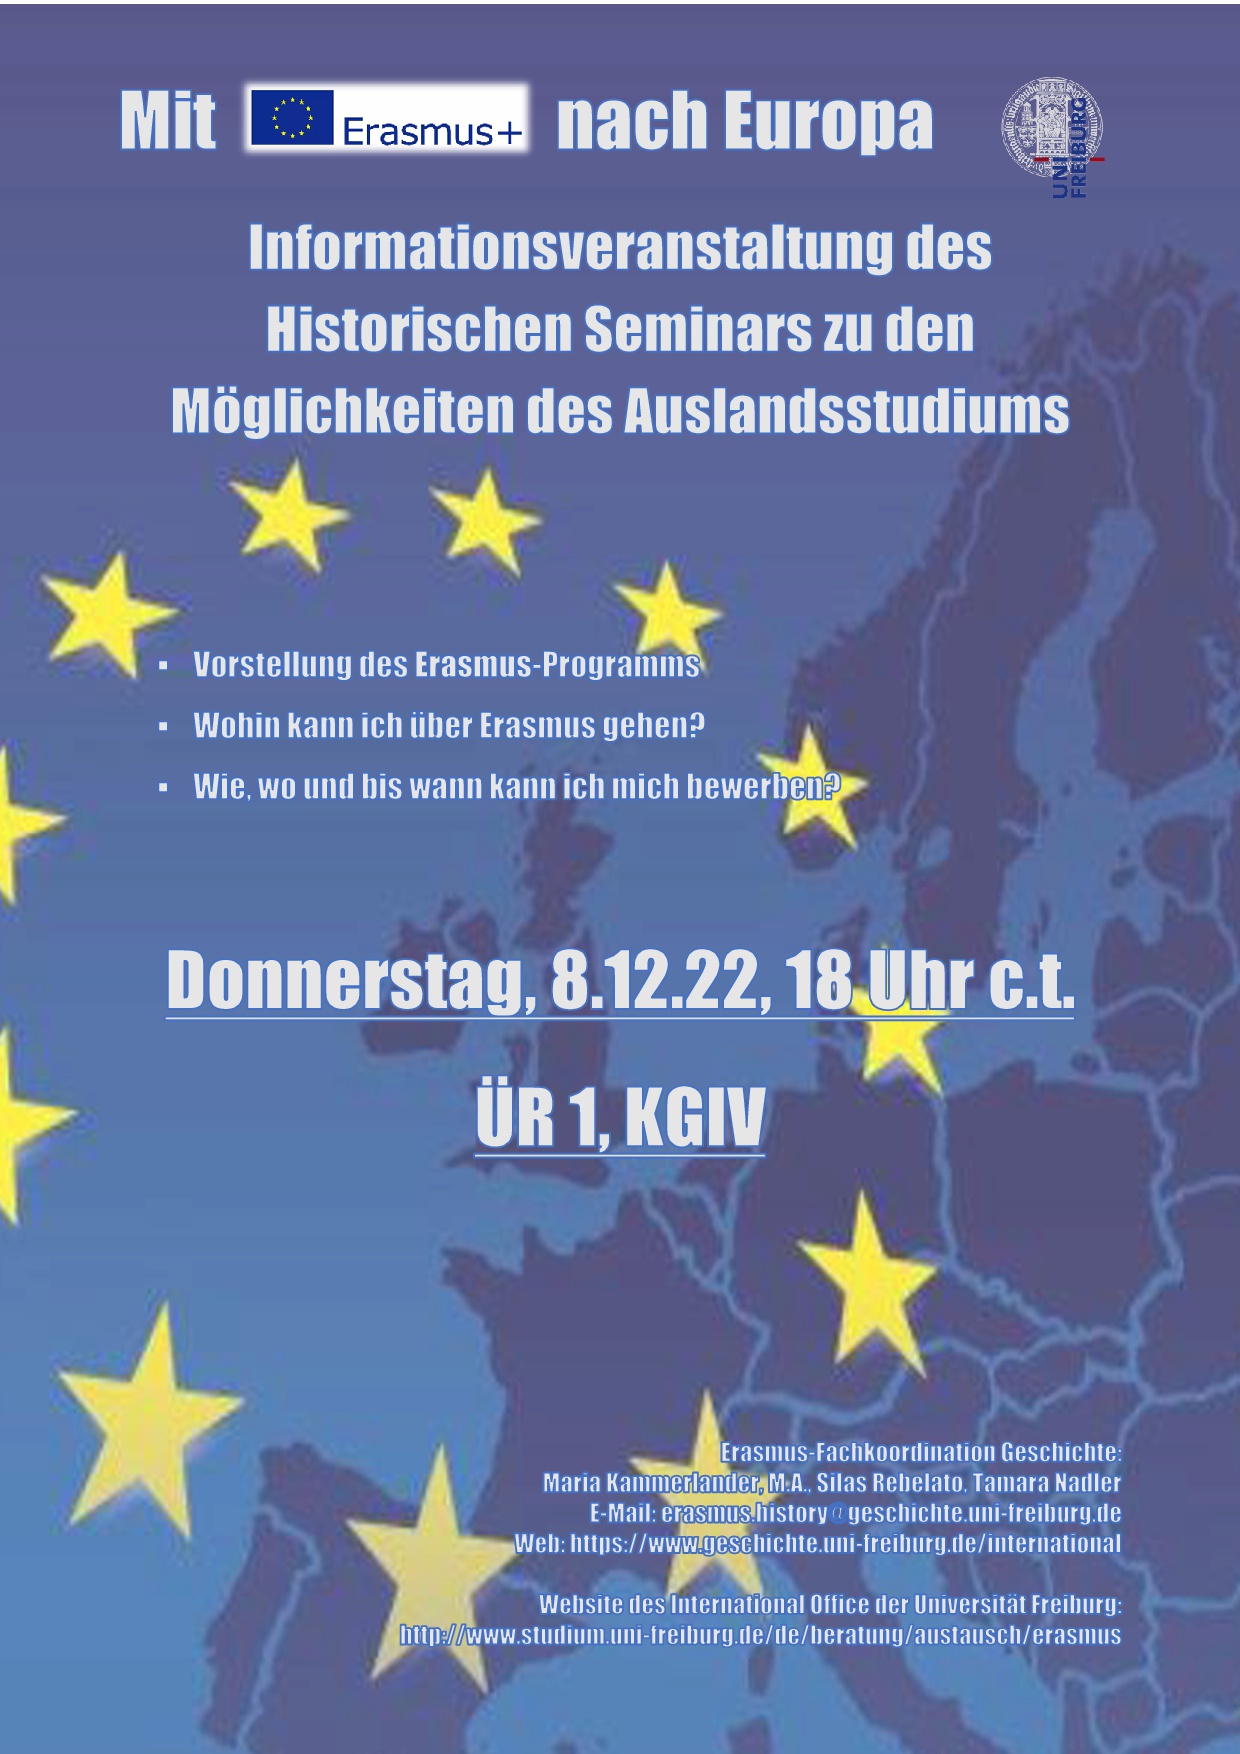 Erasmus Infoveranstaltung am 08.12.22